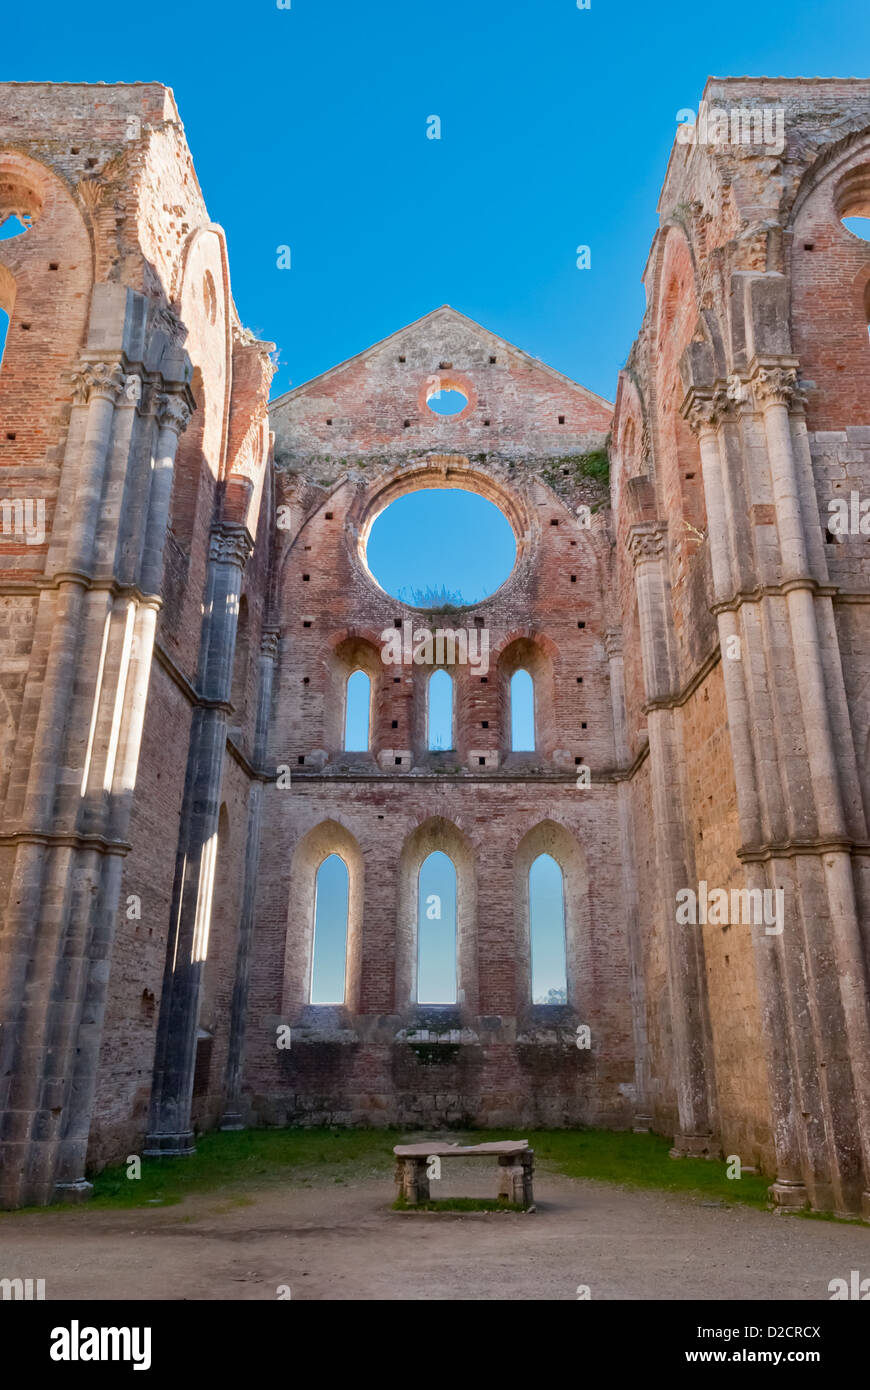 Abbey of San Galgano, Tuscany, Italy Stock Photo